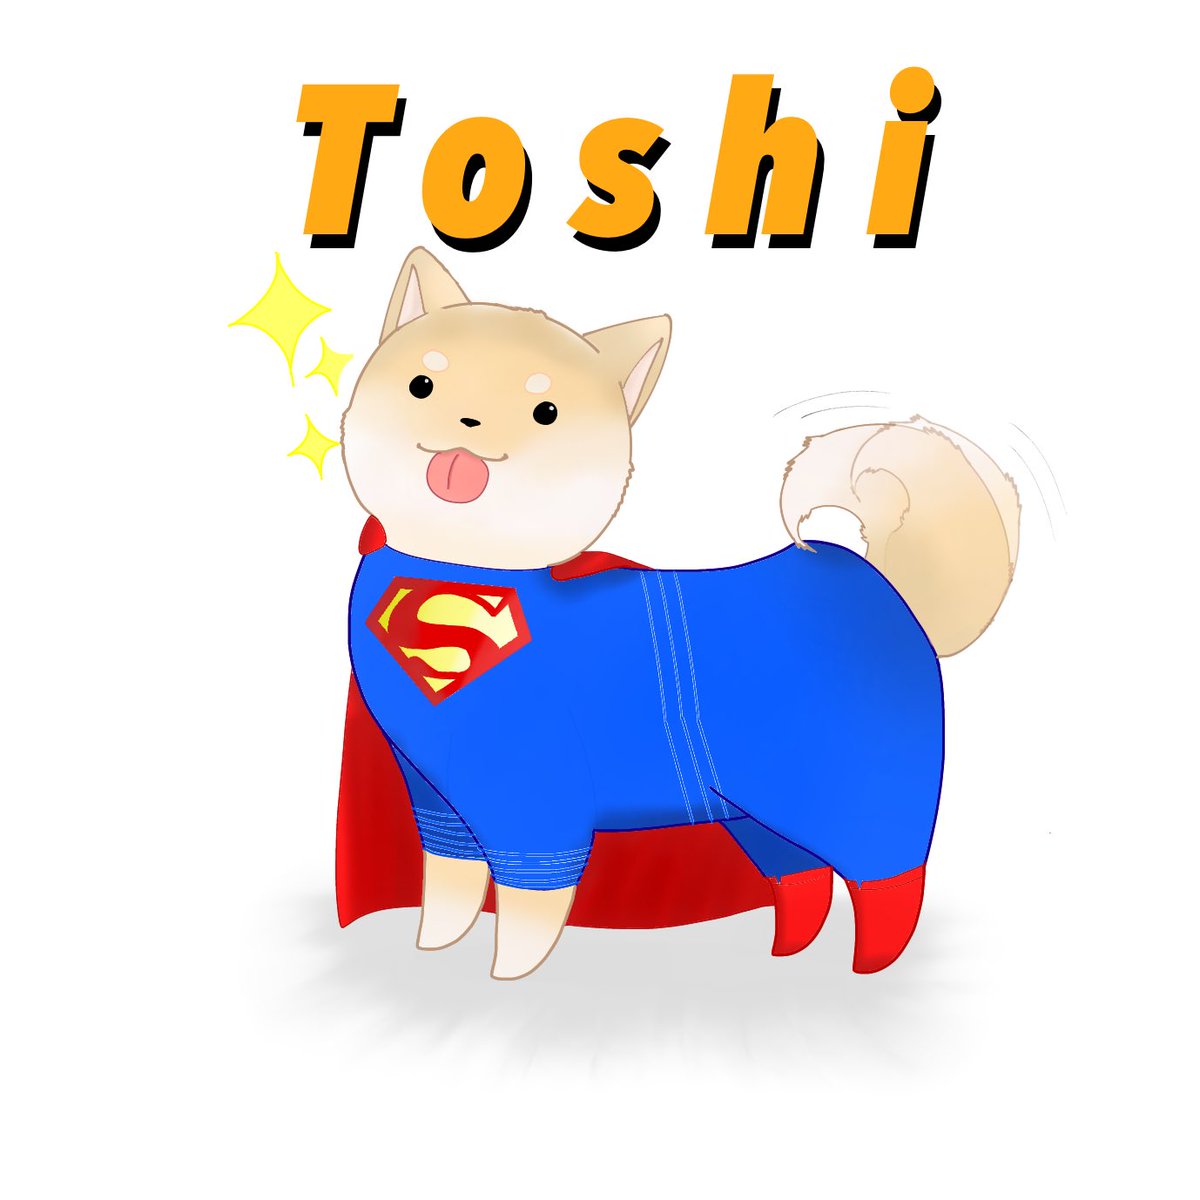 Toshi 50人クラフト Auf Twitter 顔ちょっと向いてるのいいですね スーパーマンスキンは初めてなので嬉しい 返信遅れちゃって申し訳ないです 可愛いイラスト有難うございます